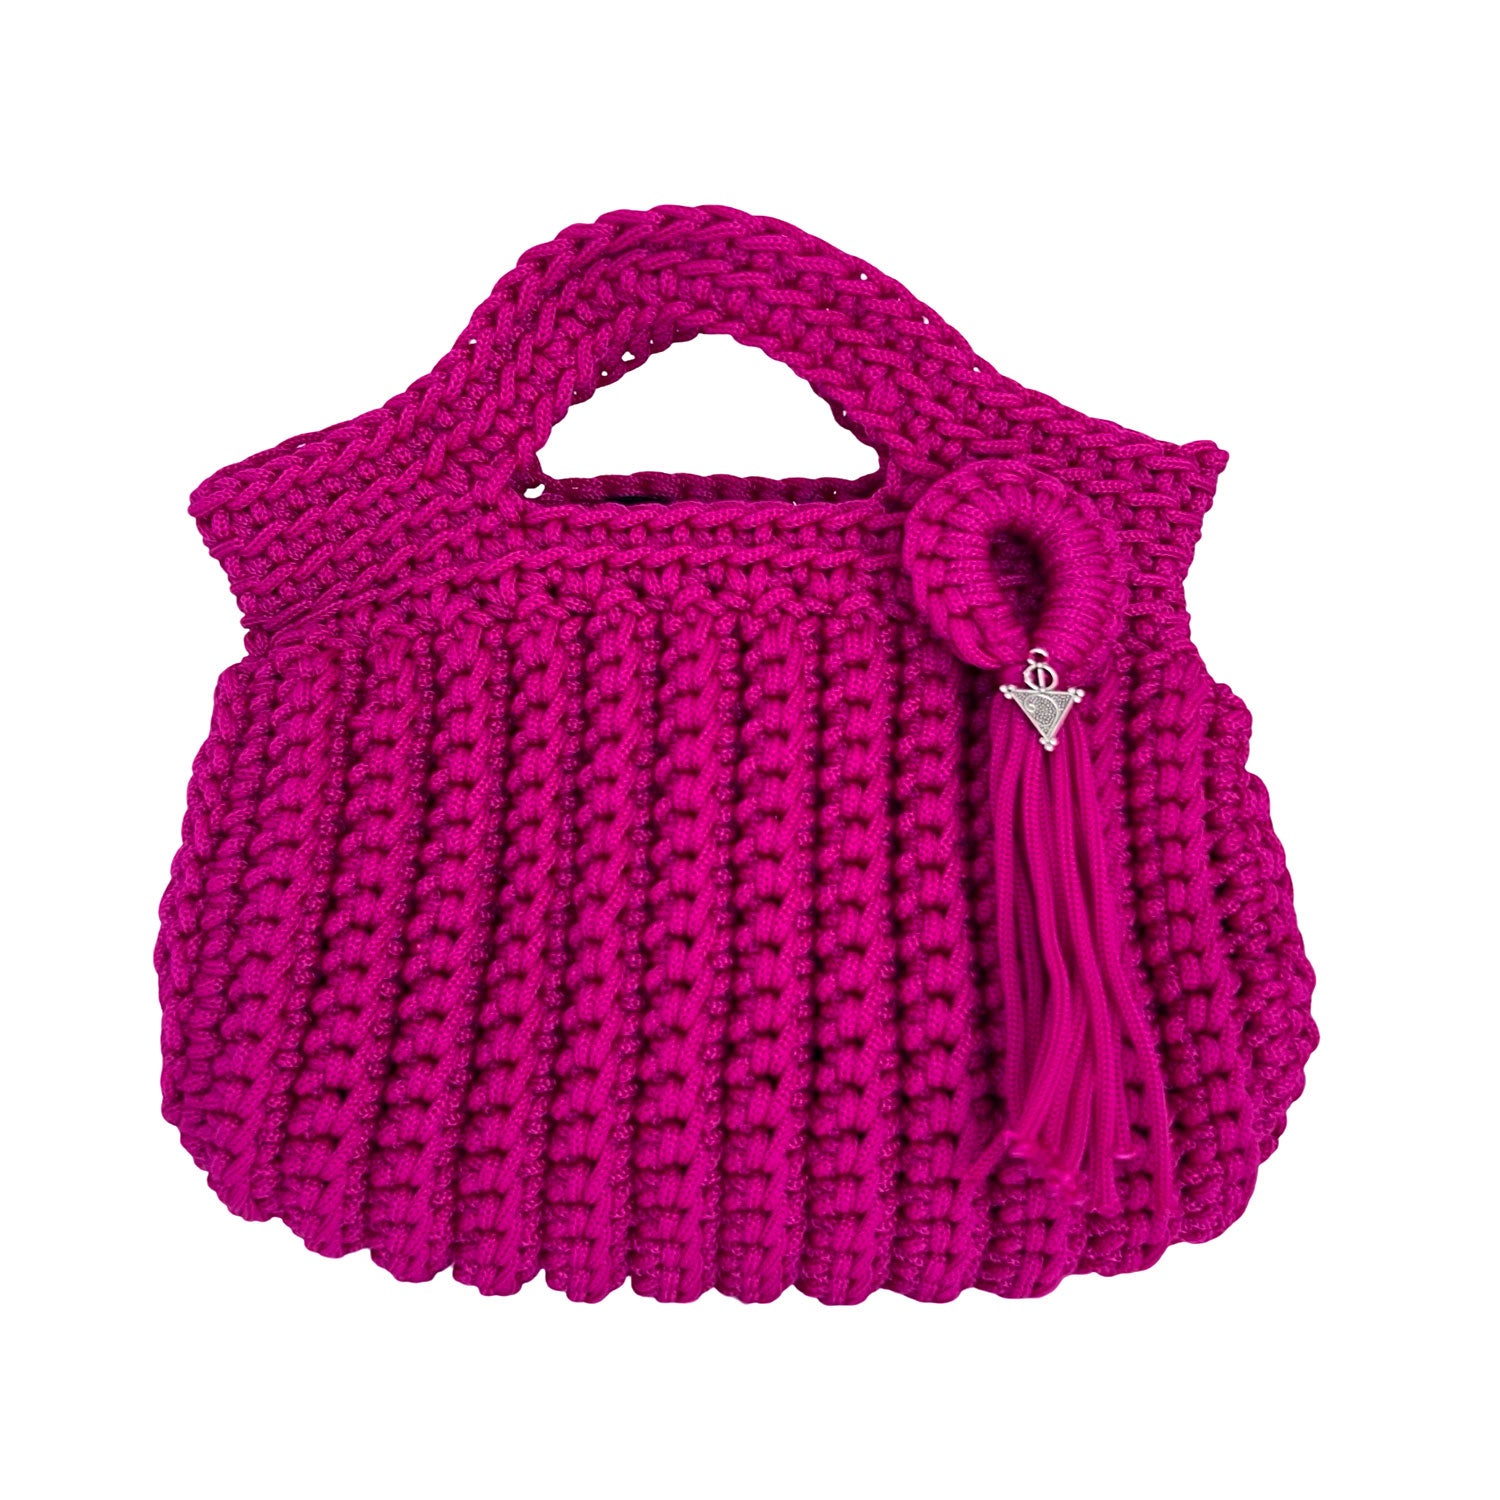 Mini Crochet Handbag in Hot Pink